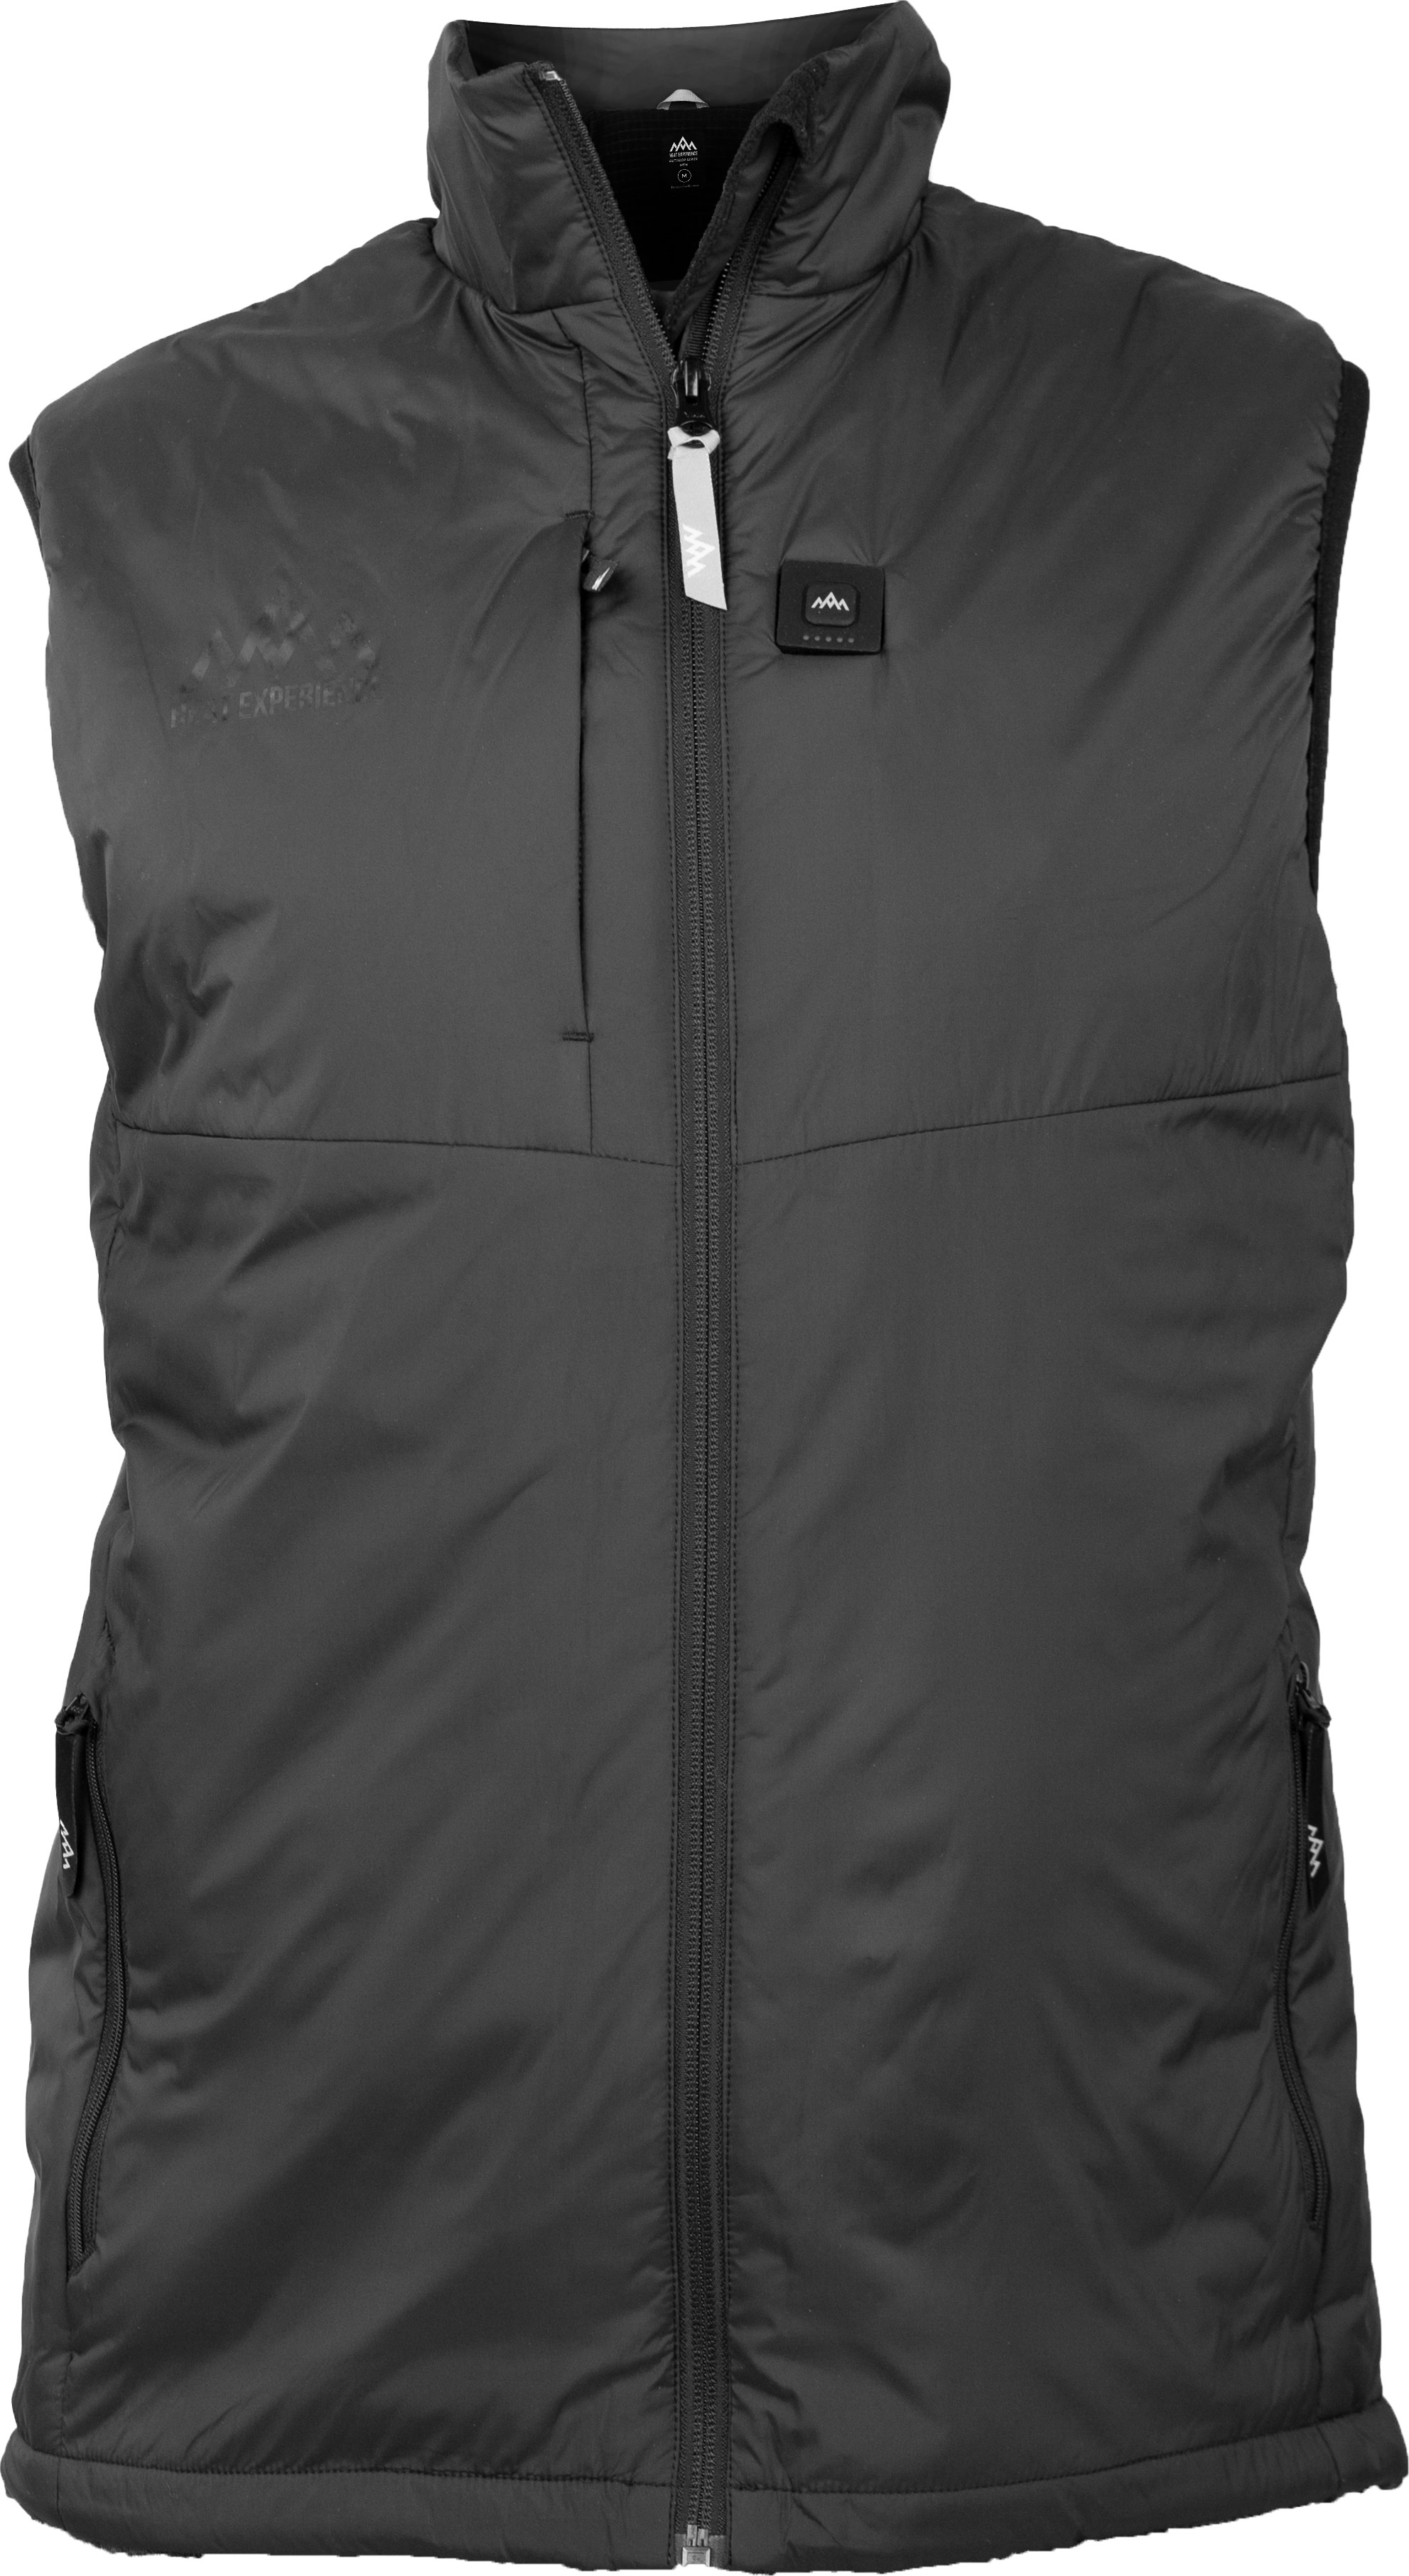 Heat Experience Men’s Heated Outdoor Vest Black